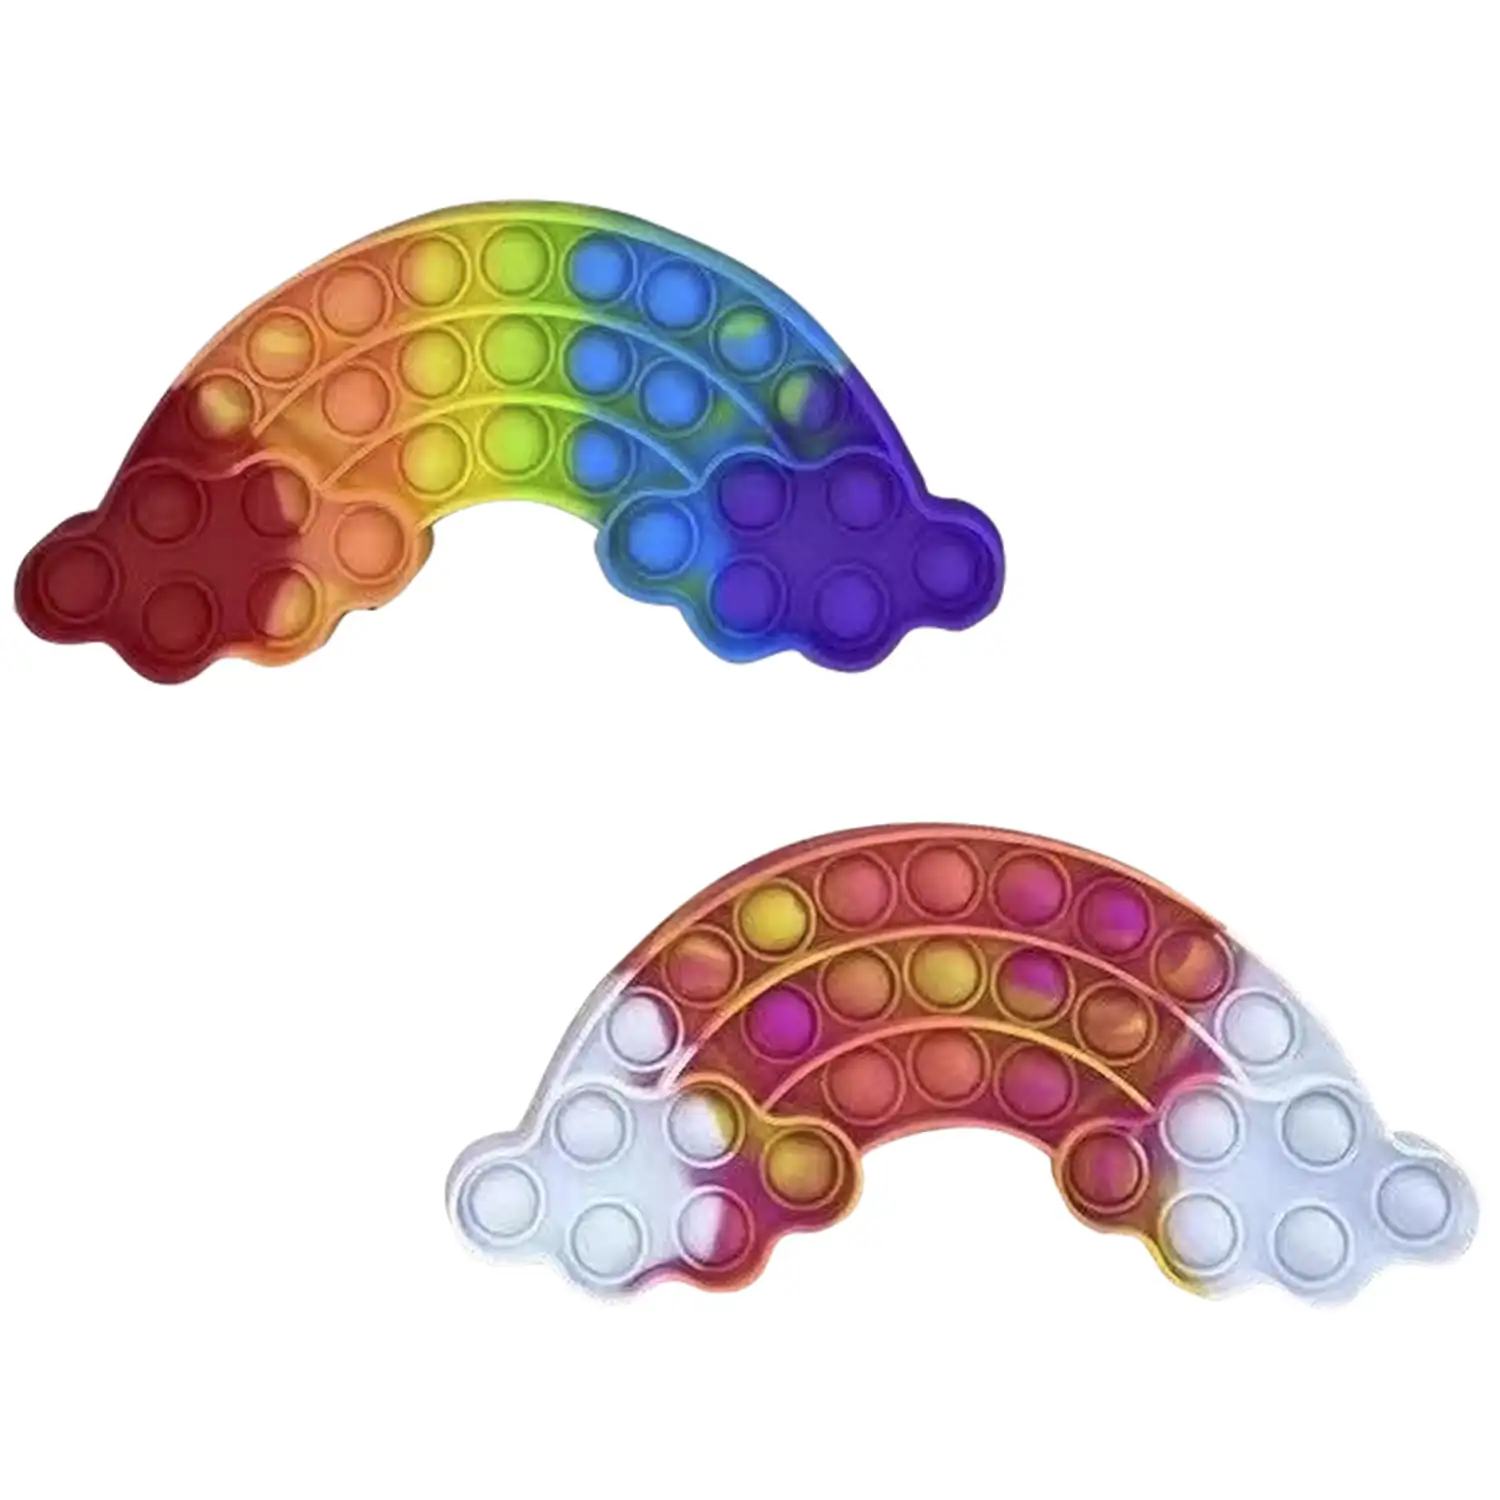 Bubble Pop It juguete sensitivo desestresante, burbujas de silicona para apretar y pulsar. Diseño arcoiris. Colores aleatorios.